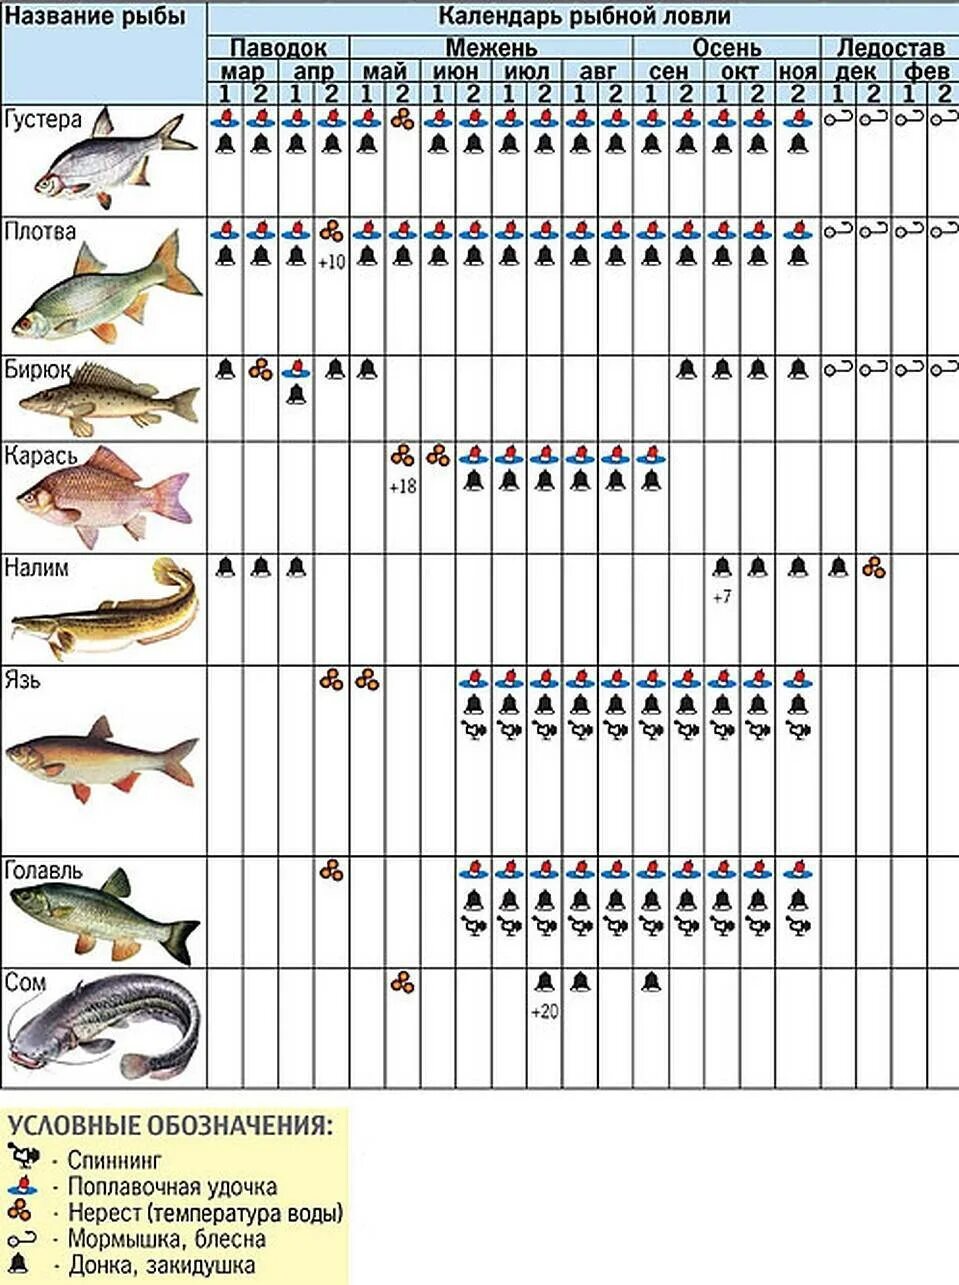 Какую рыбу можно поймать в апреле. Календарь рыбалки. На что можно лов ть рыбу. Календарь рыболова. Календарь ловли рыбы.